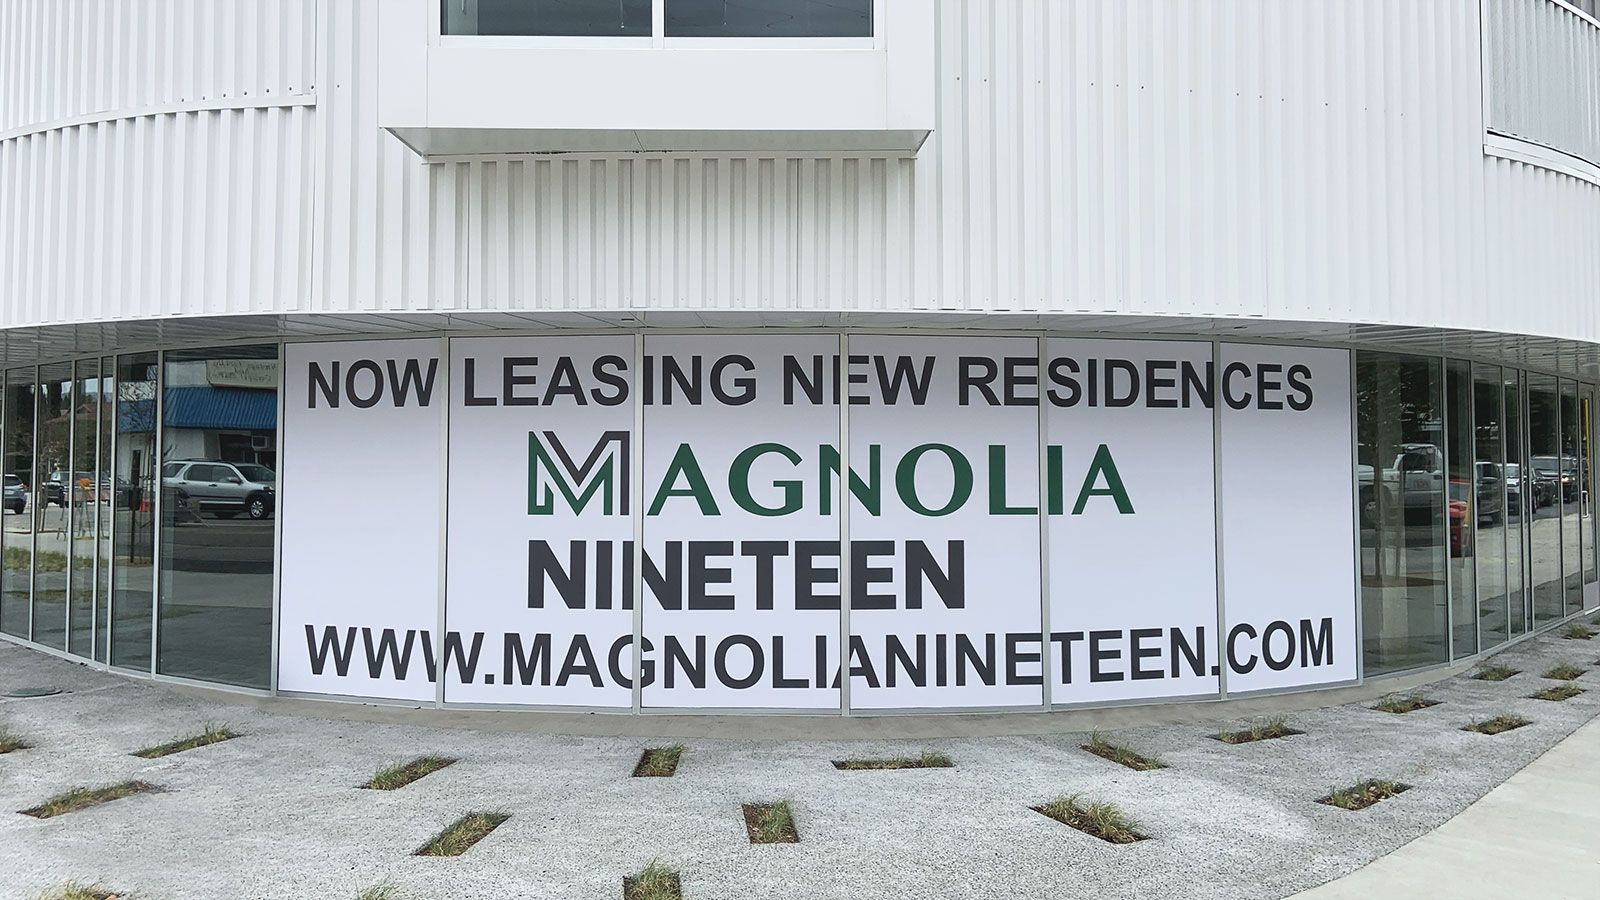 Magnolia Nineteen window decals